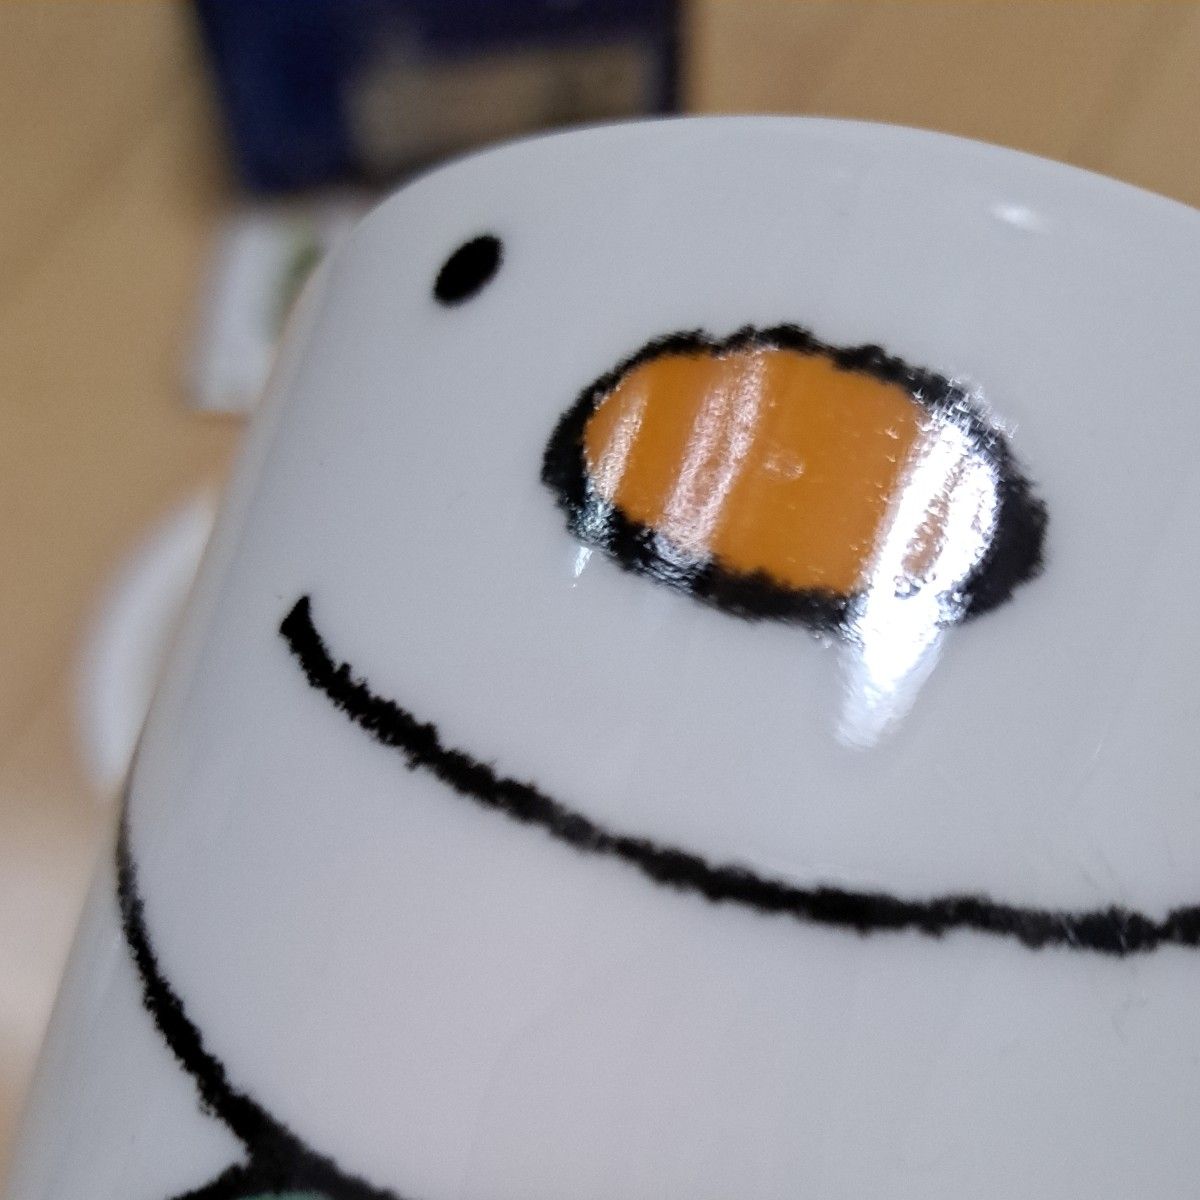 Snow Man　 マグ　 マグカップ　茶漉し付き　ハーブマグ　紅茶　バーブティ　緑茶　茶葉　コーヒー　カフェオレ　陶器　キャラ